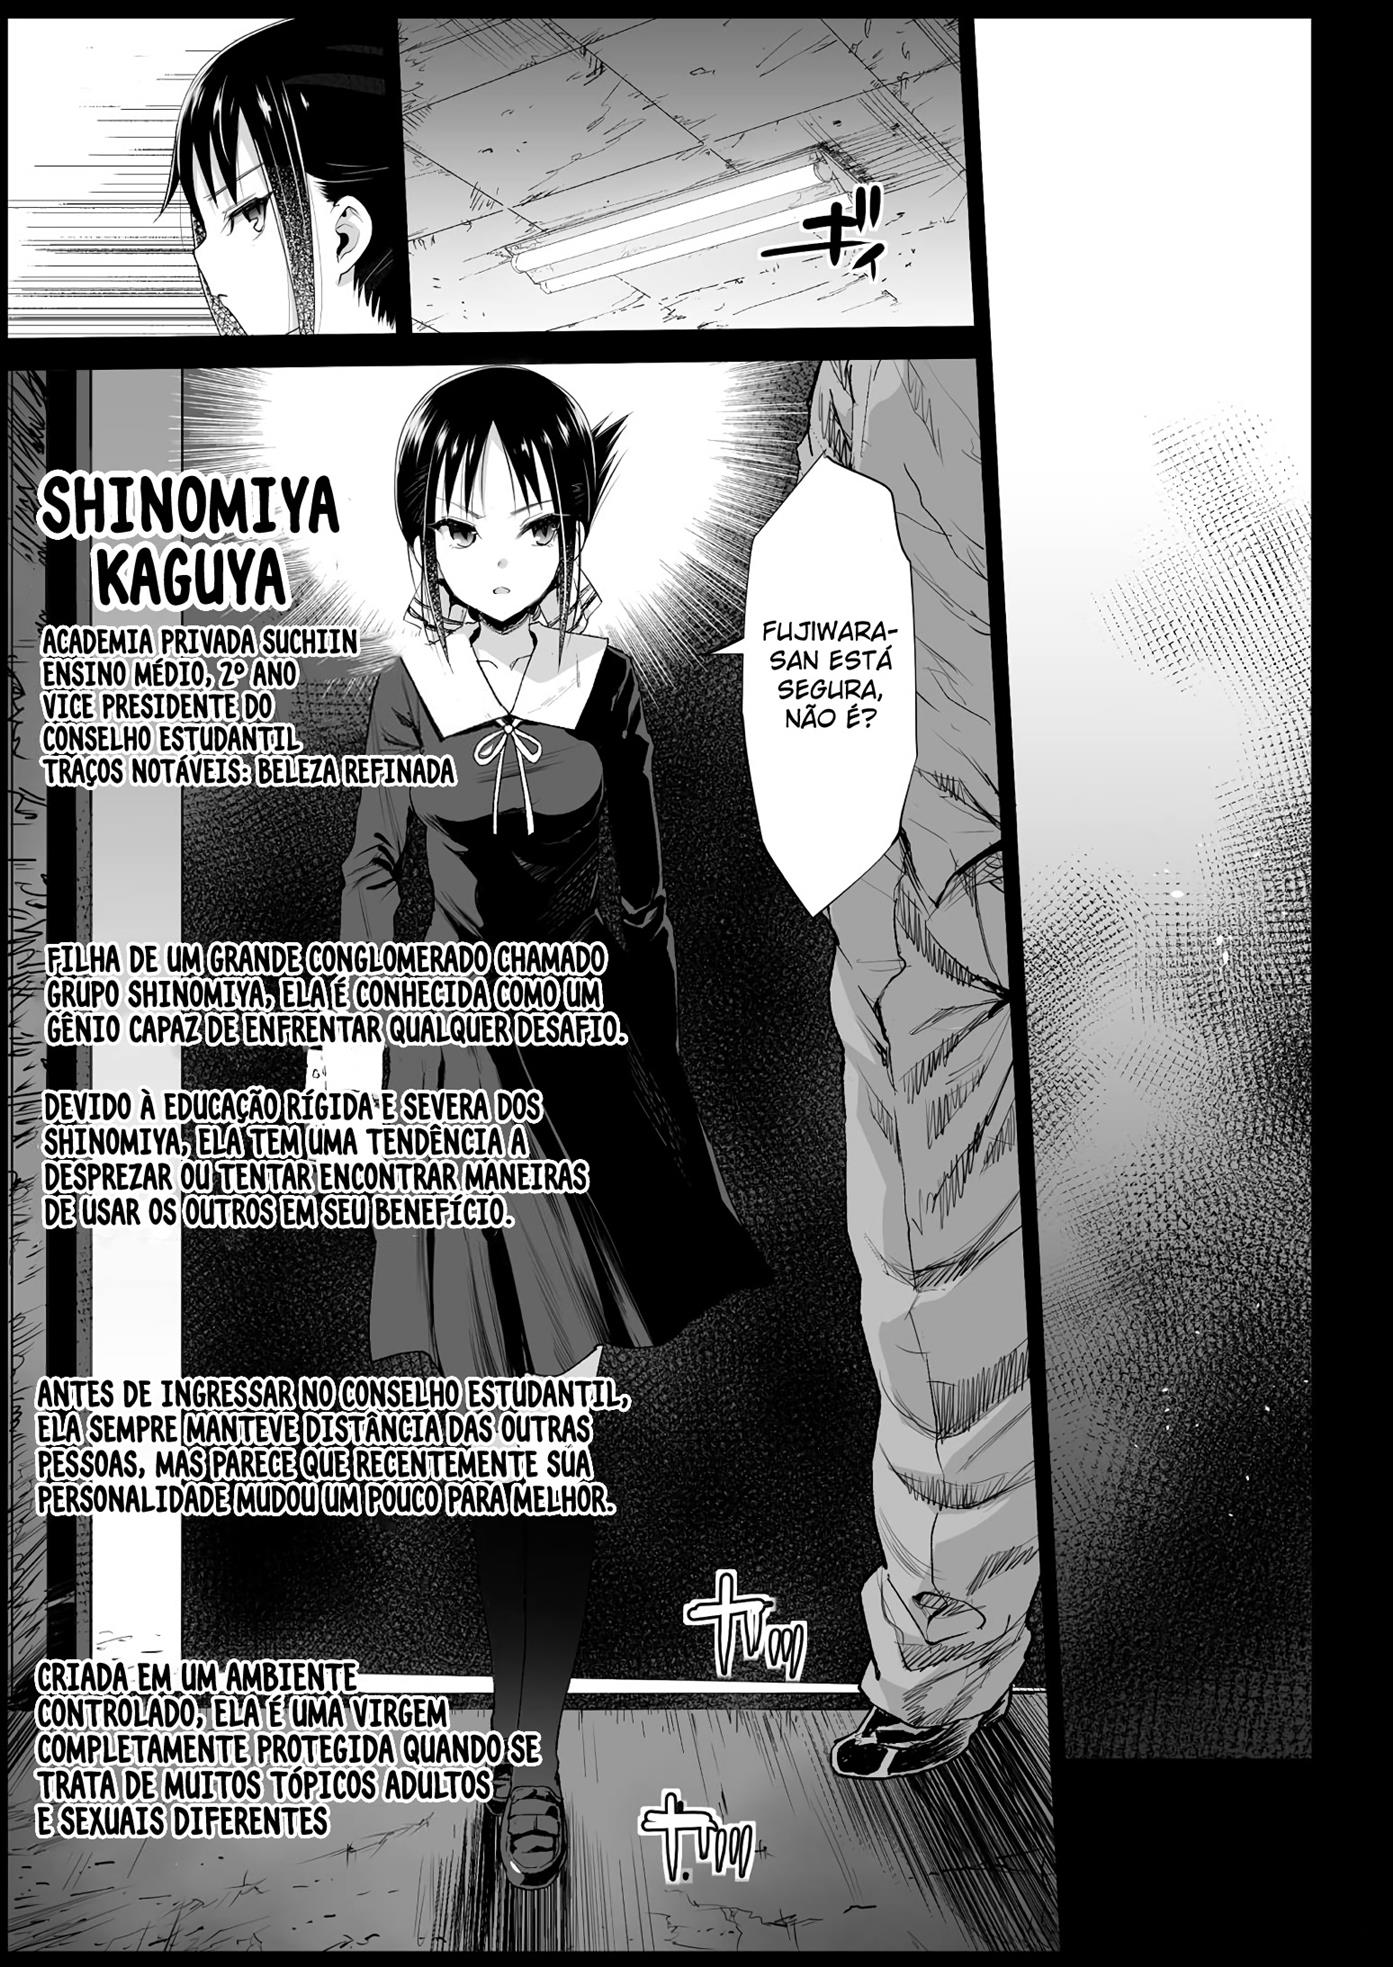 O estupro de Kaguya